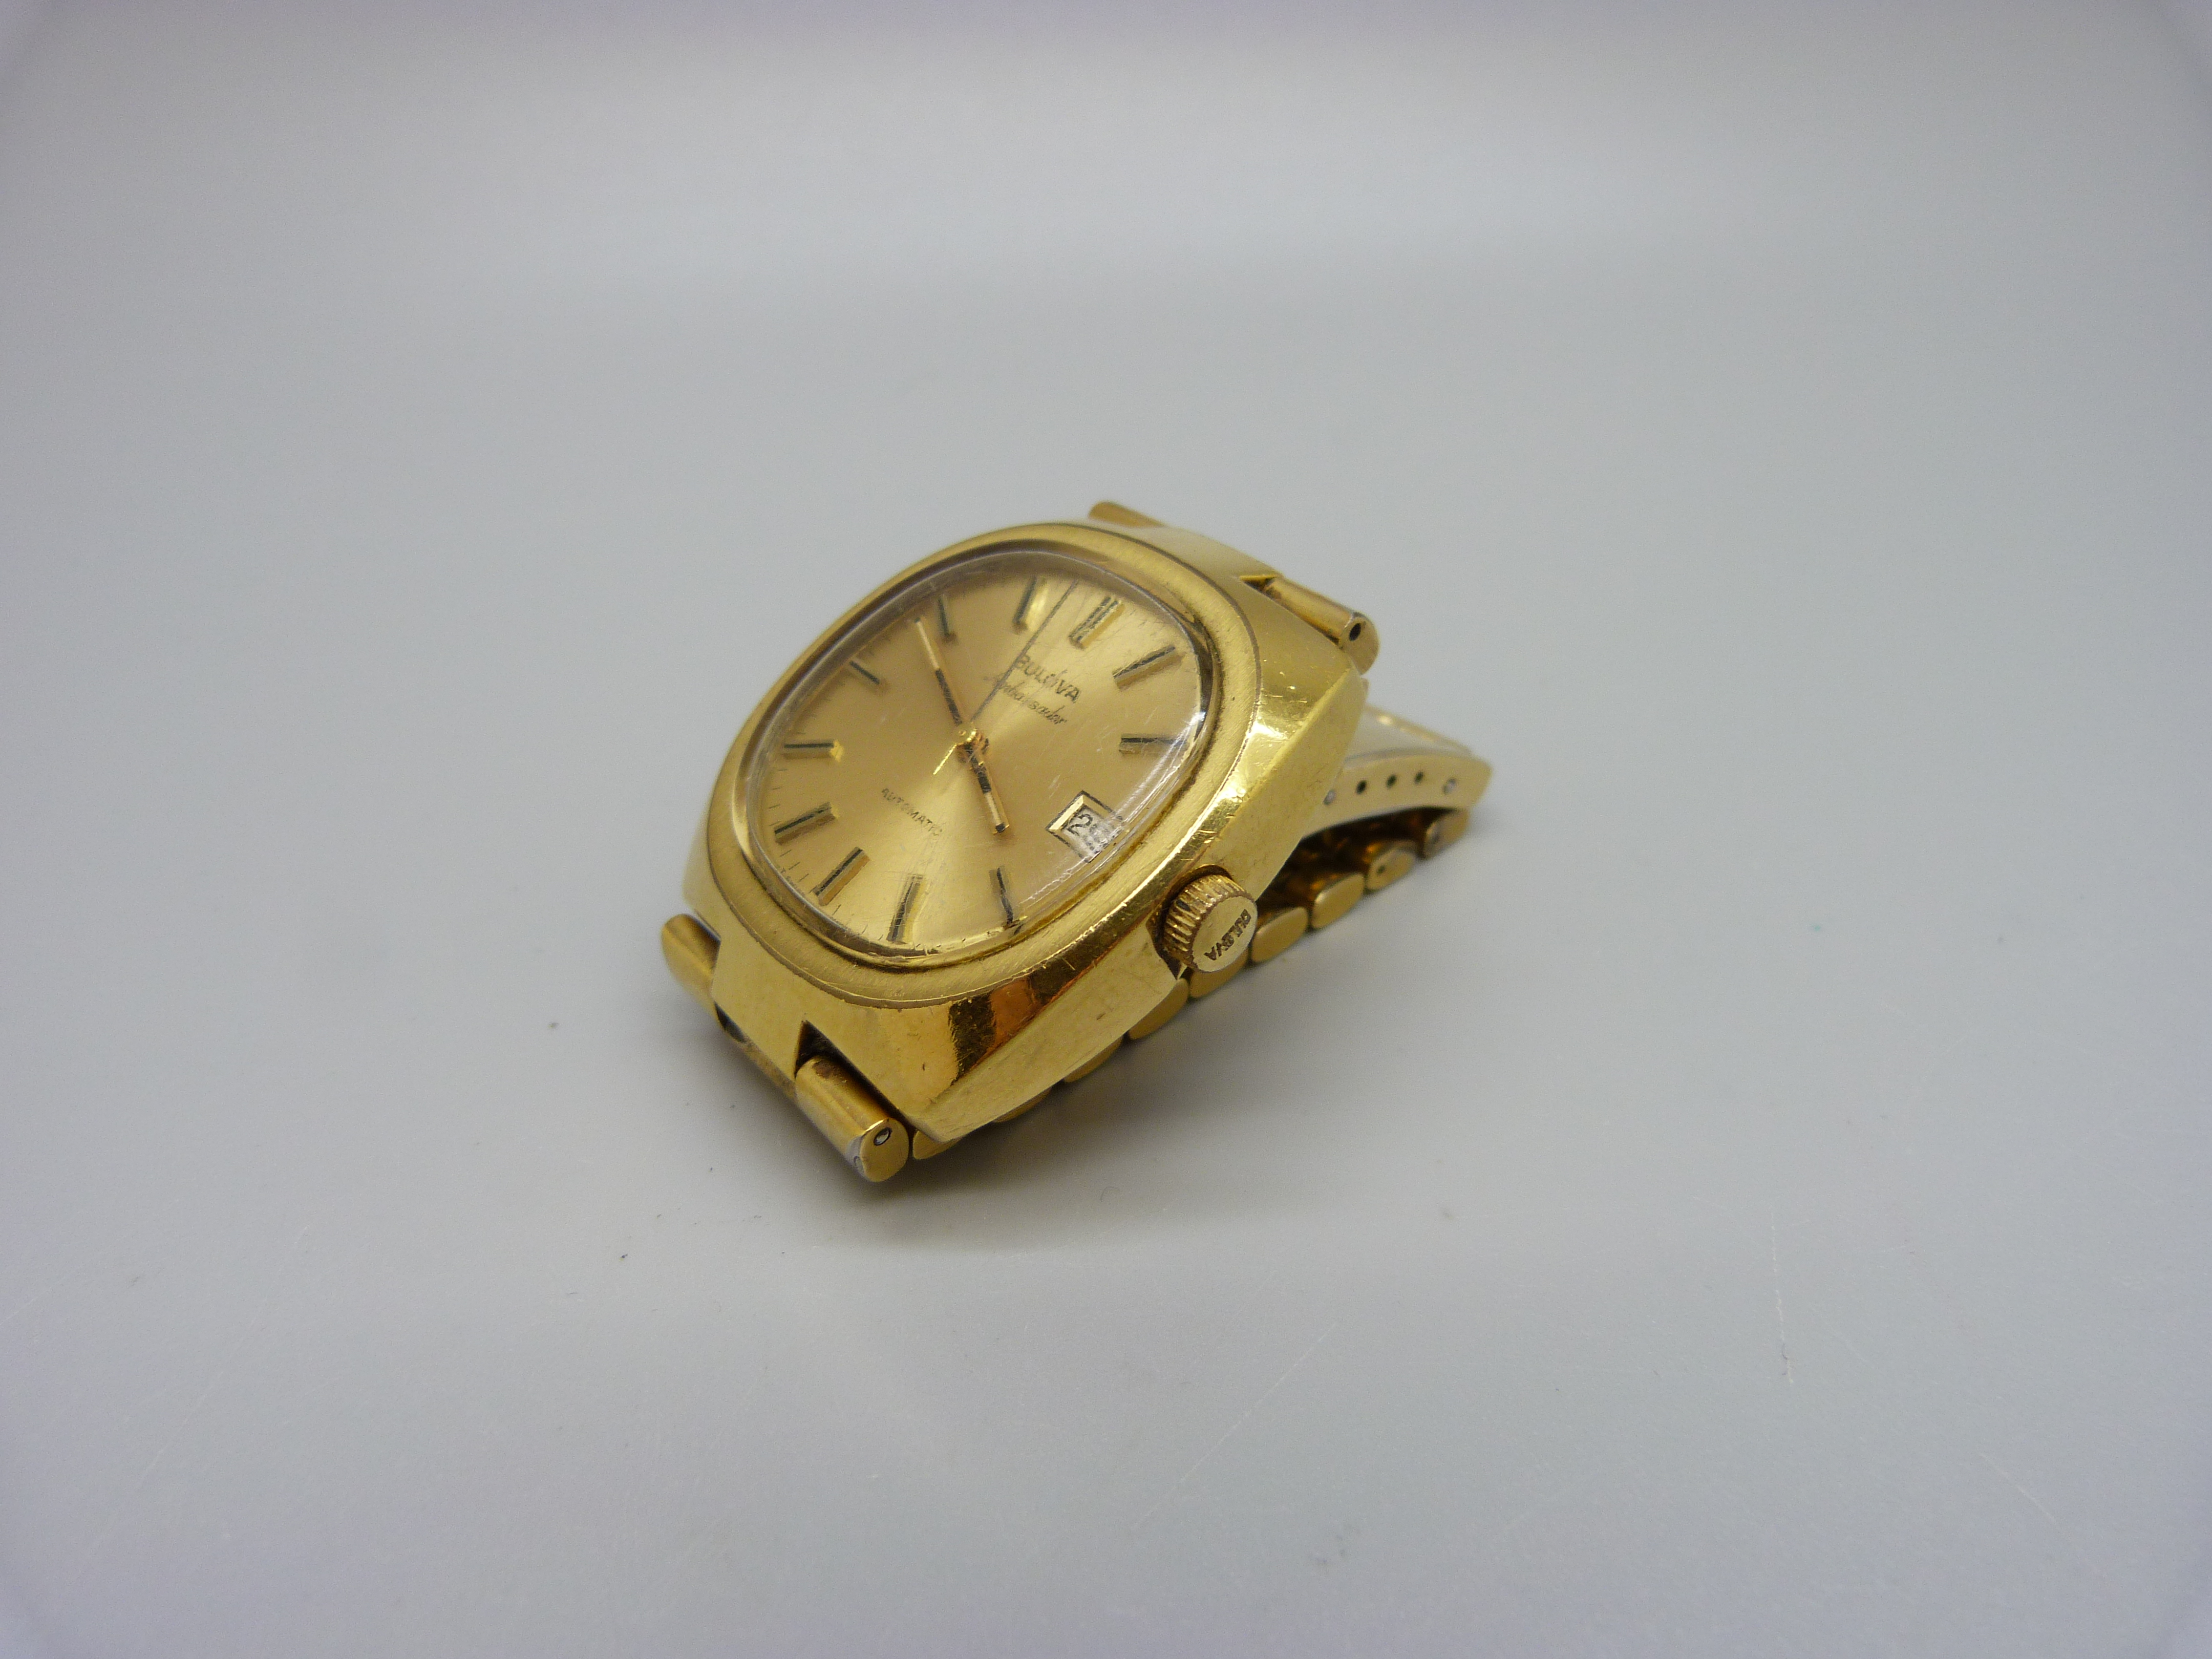 A Bulova Ambassador automatic wristwatch - Image 2 of 7